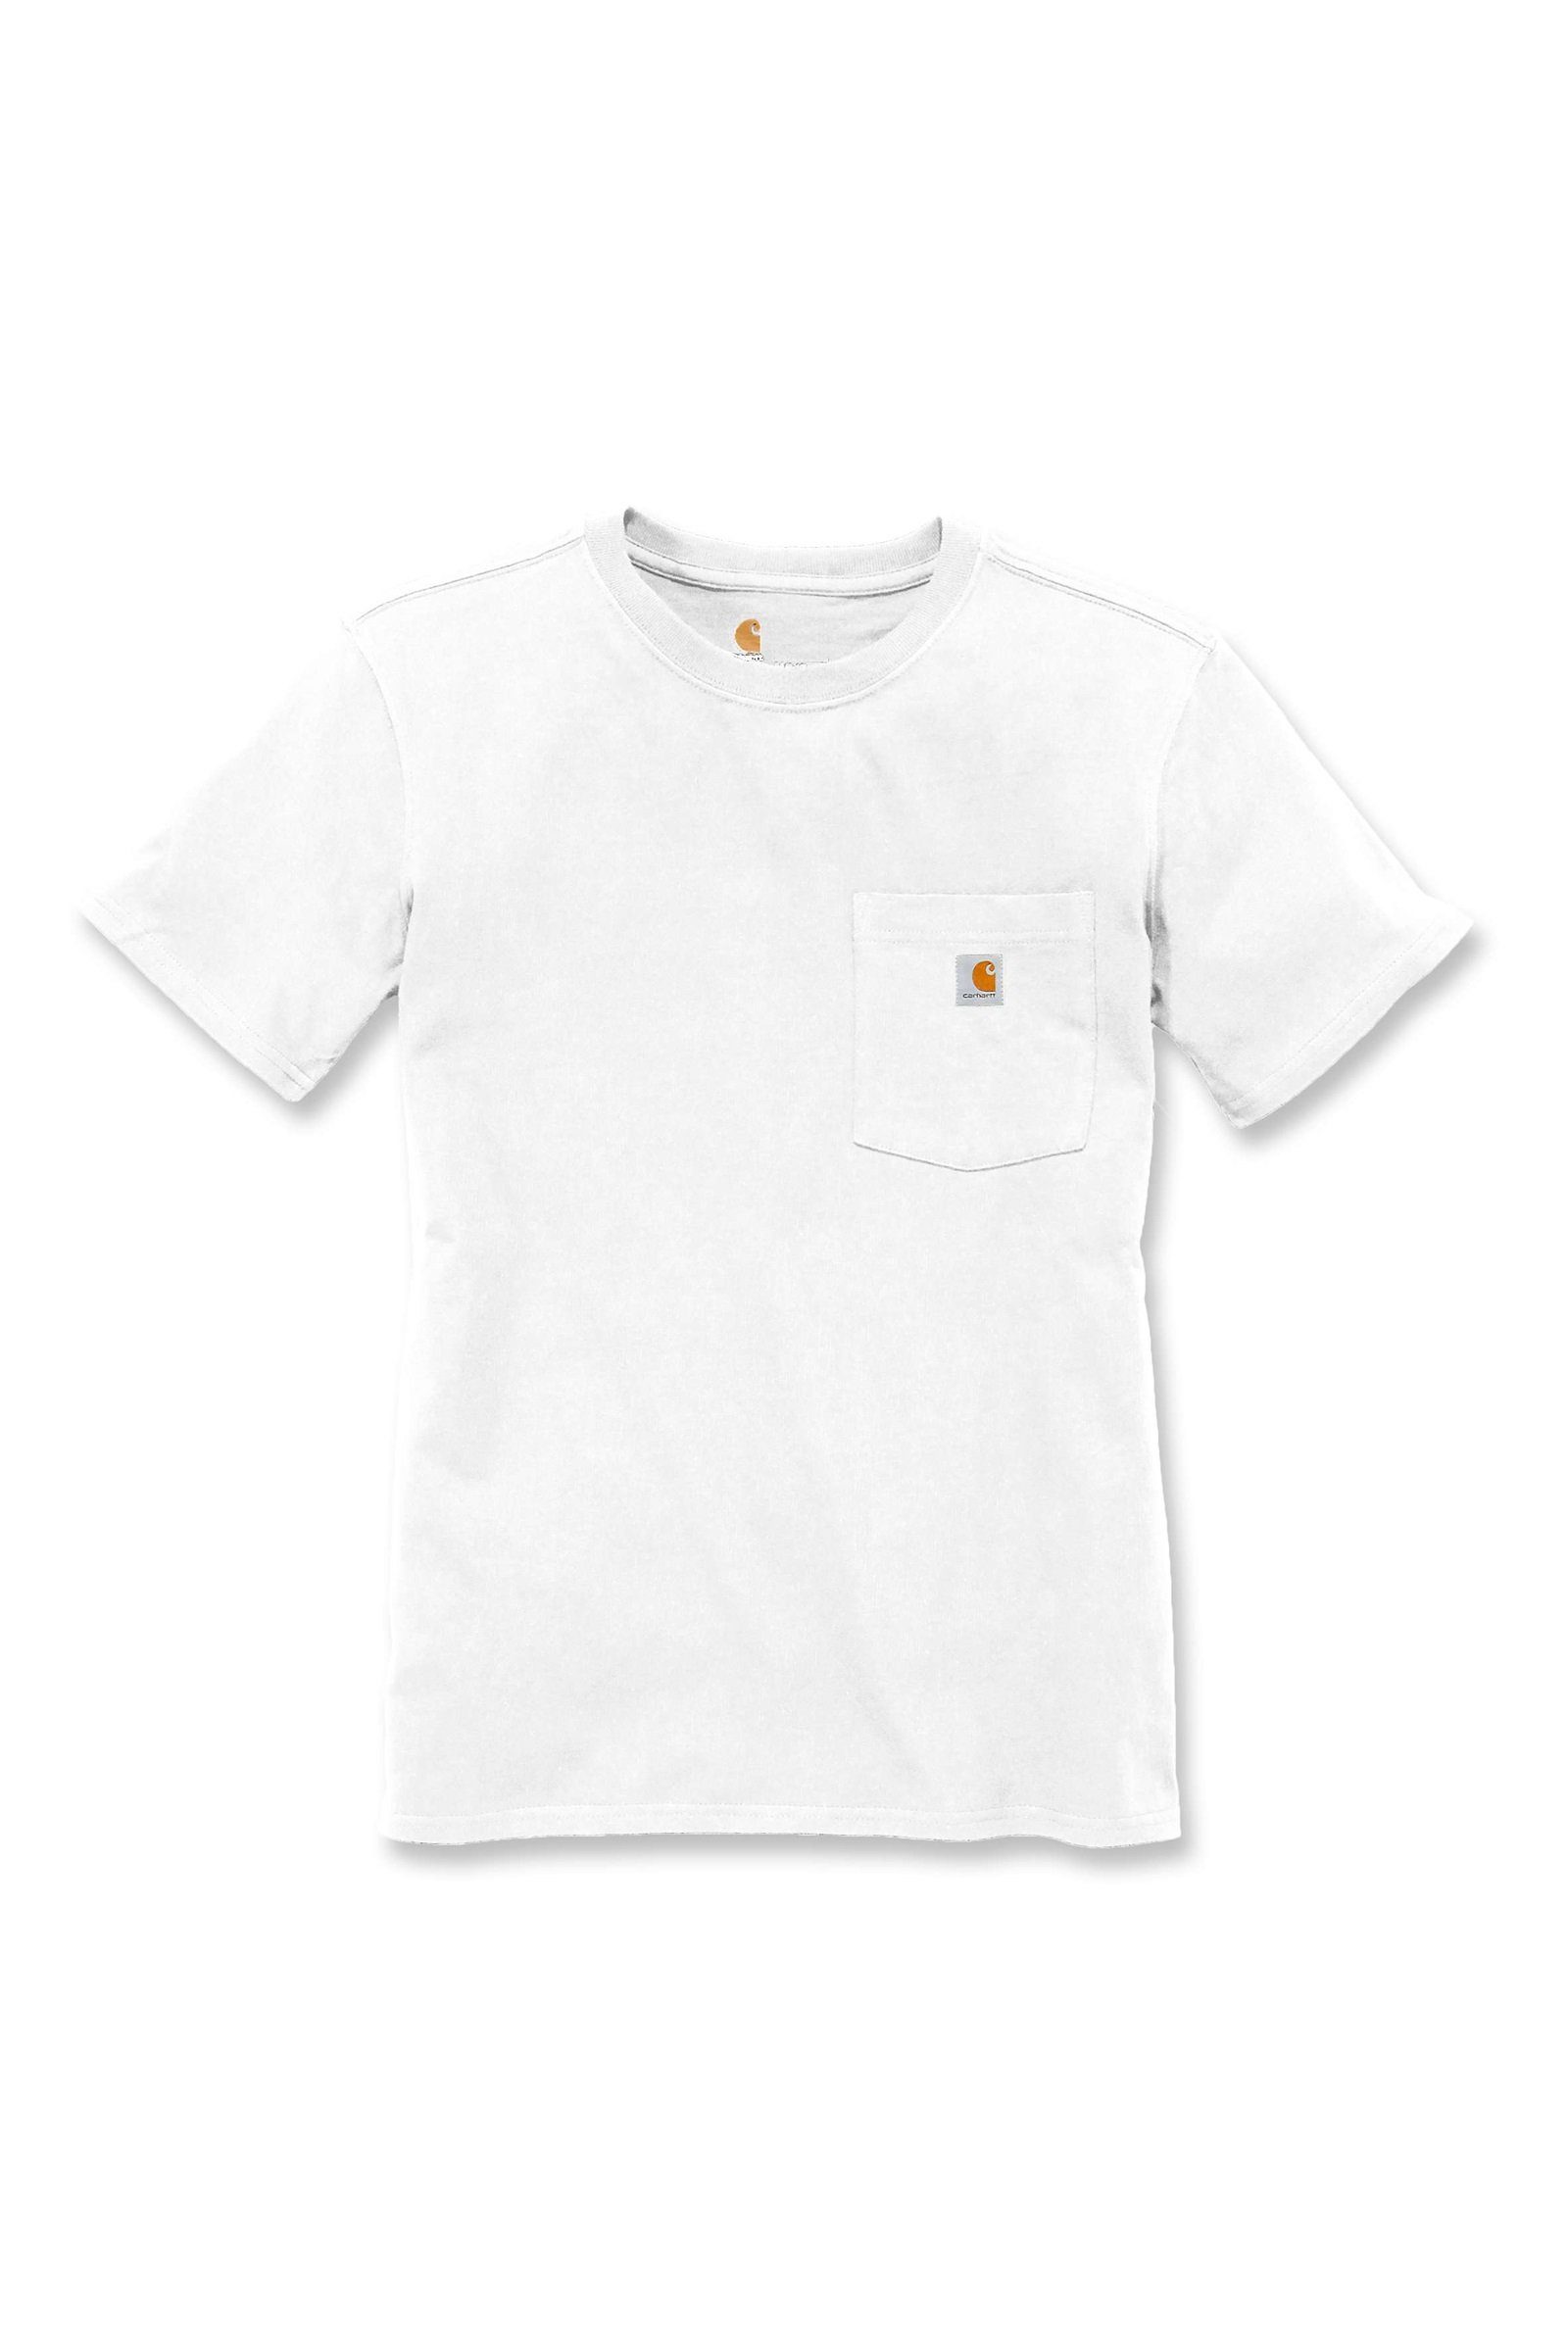 T-Shirt Heavyweight Adult Fit Pocket Carhartt Loose Damen Short-Sleeve Carhartt T-Shirt white